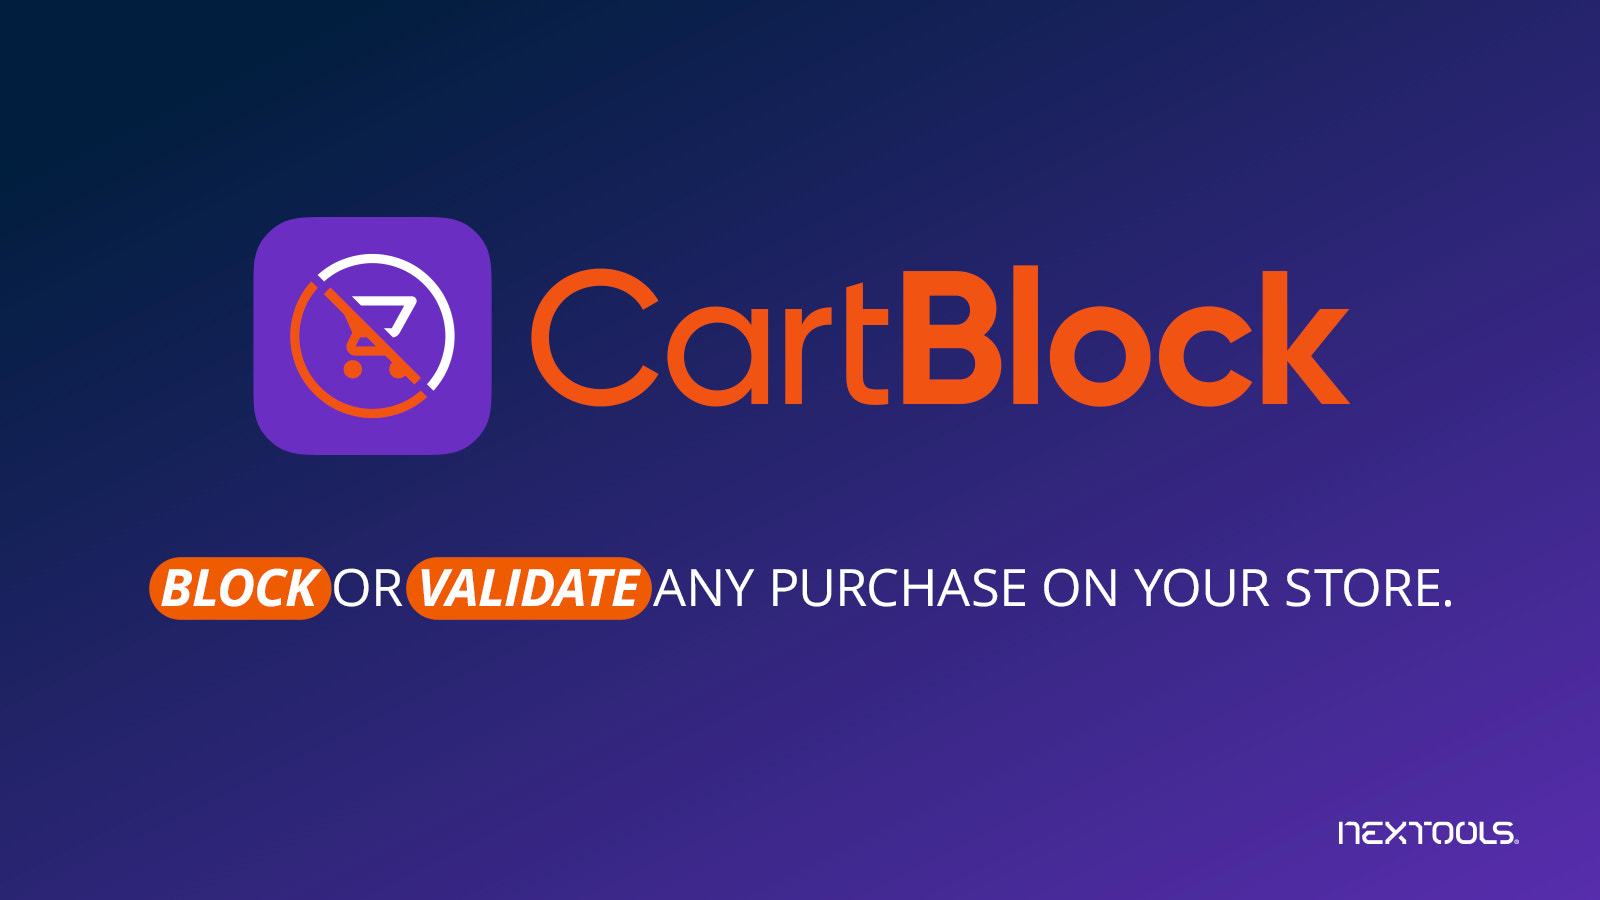 CartBlock Bloquear e Validar qualquer compra no carrinho e checkout